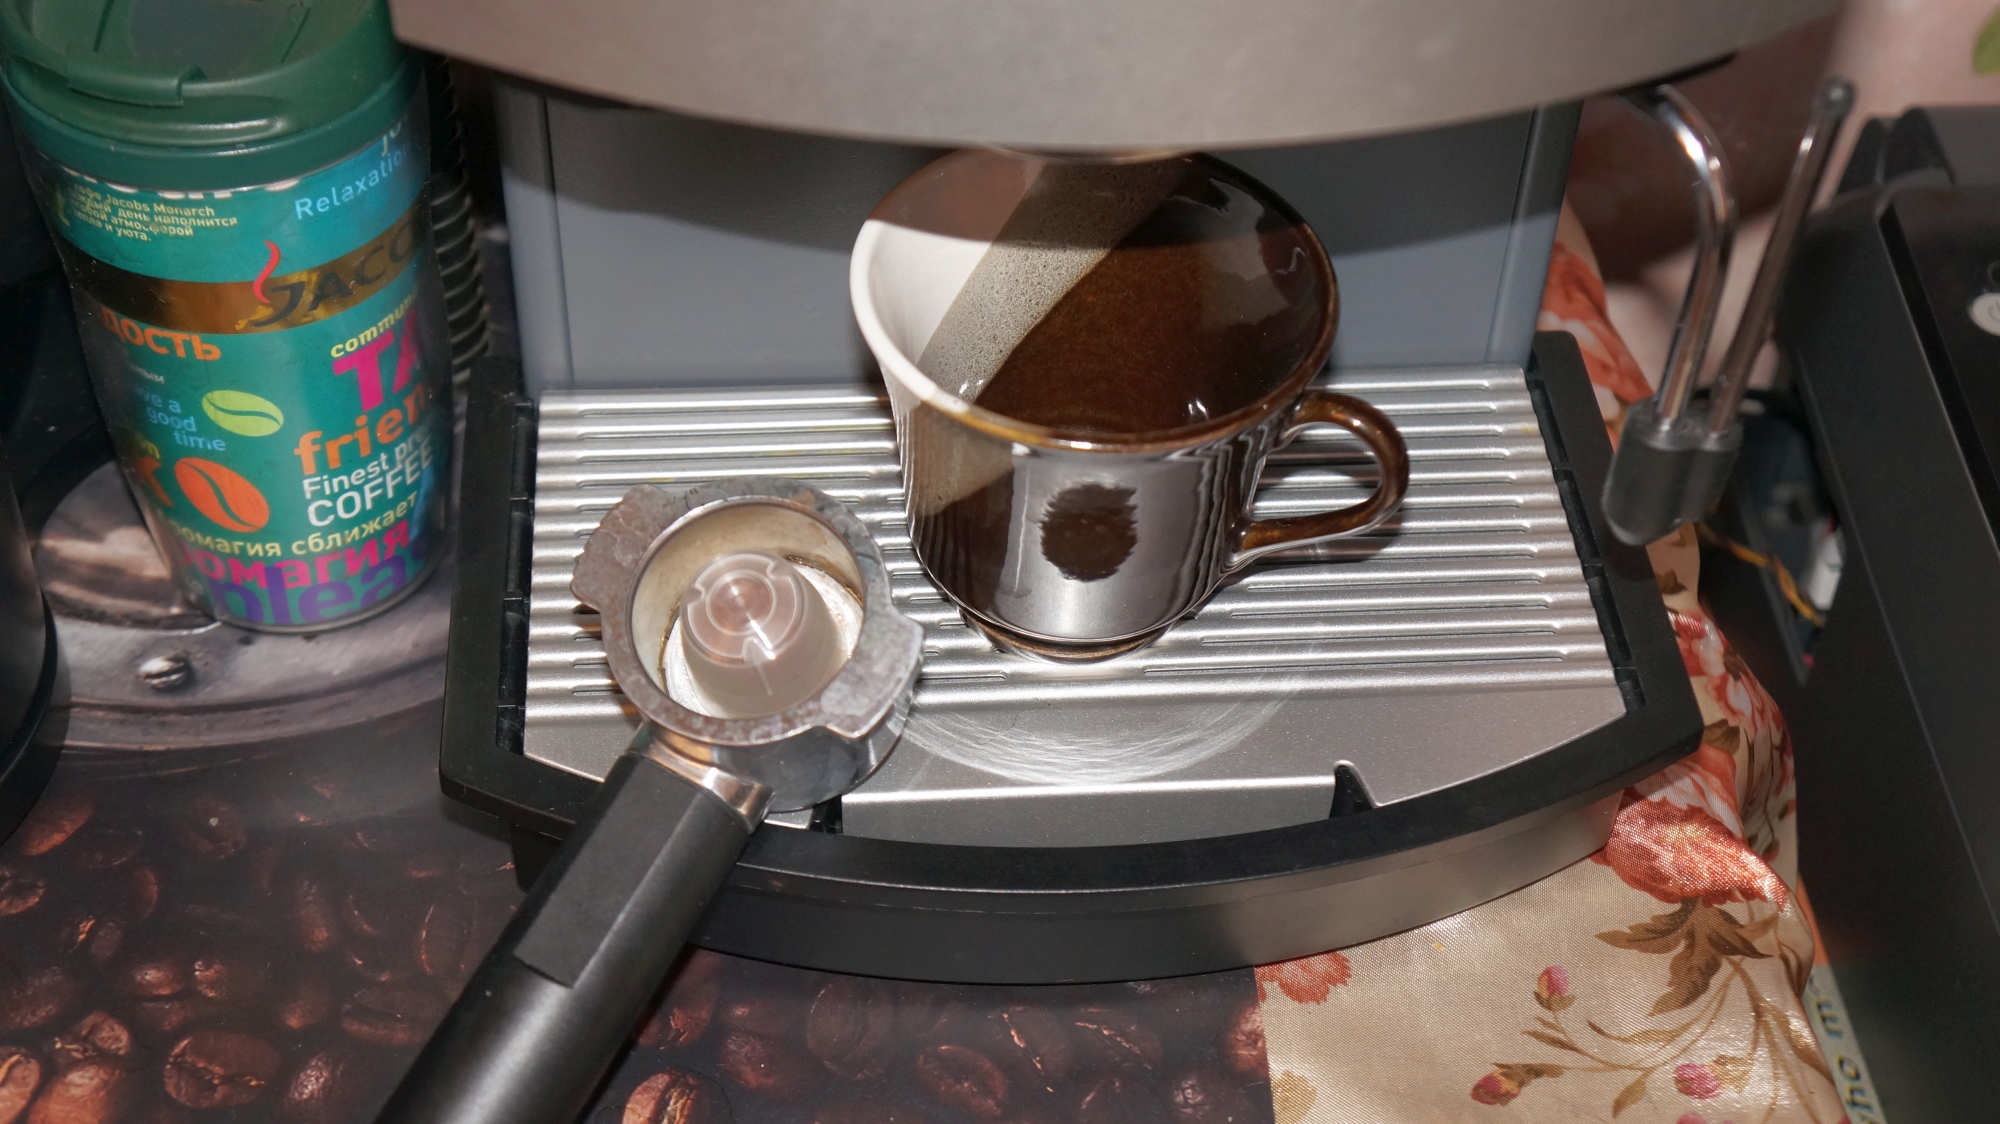 Кофе в капсулах Veronese Espresso Intenso Irish Cream стандарта Nespresso